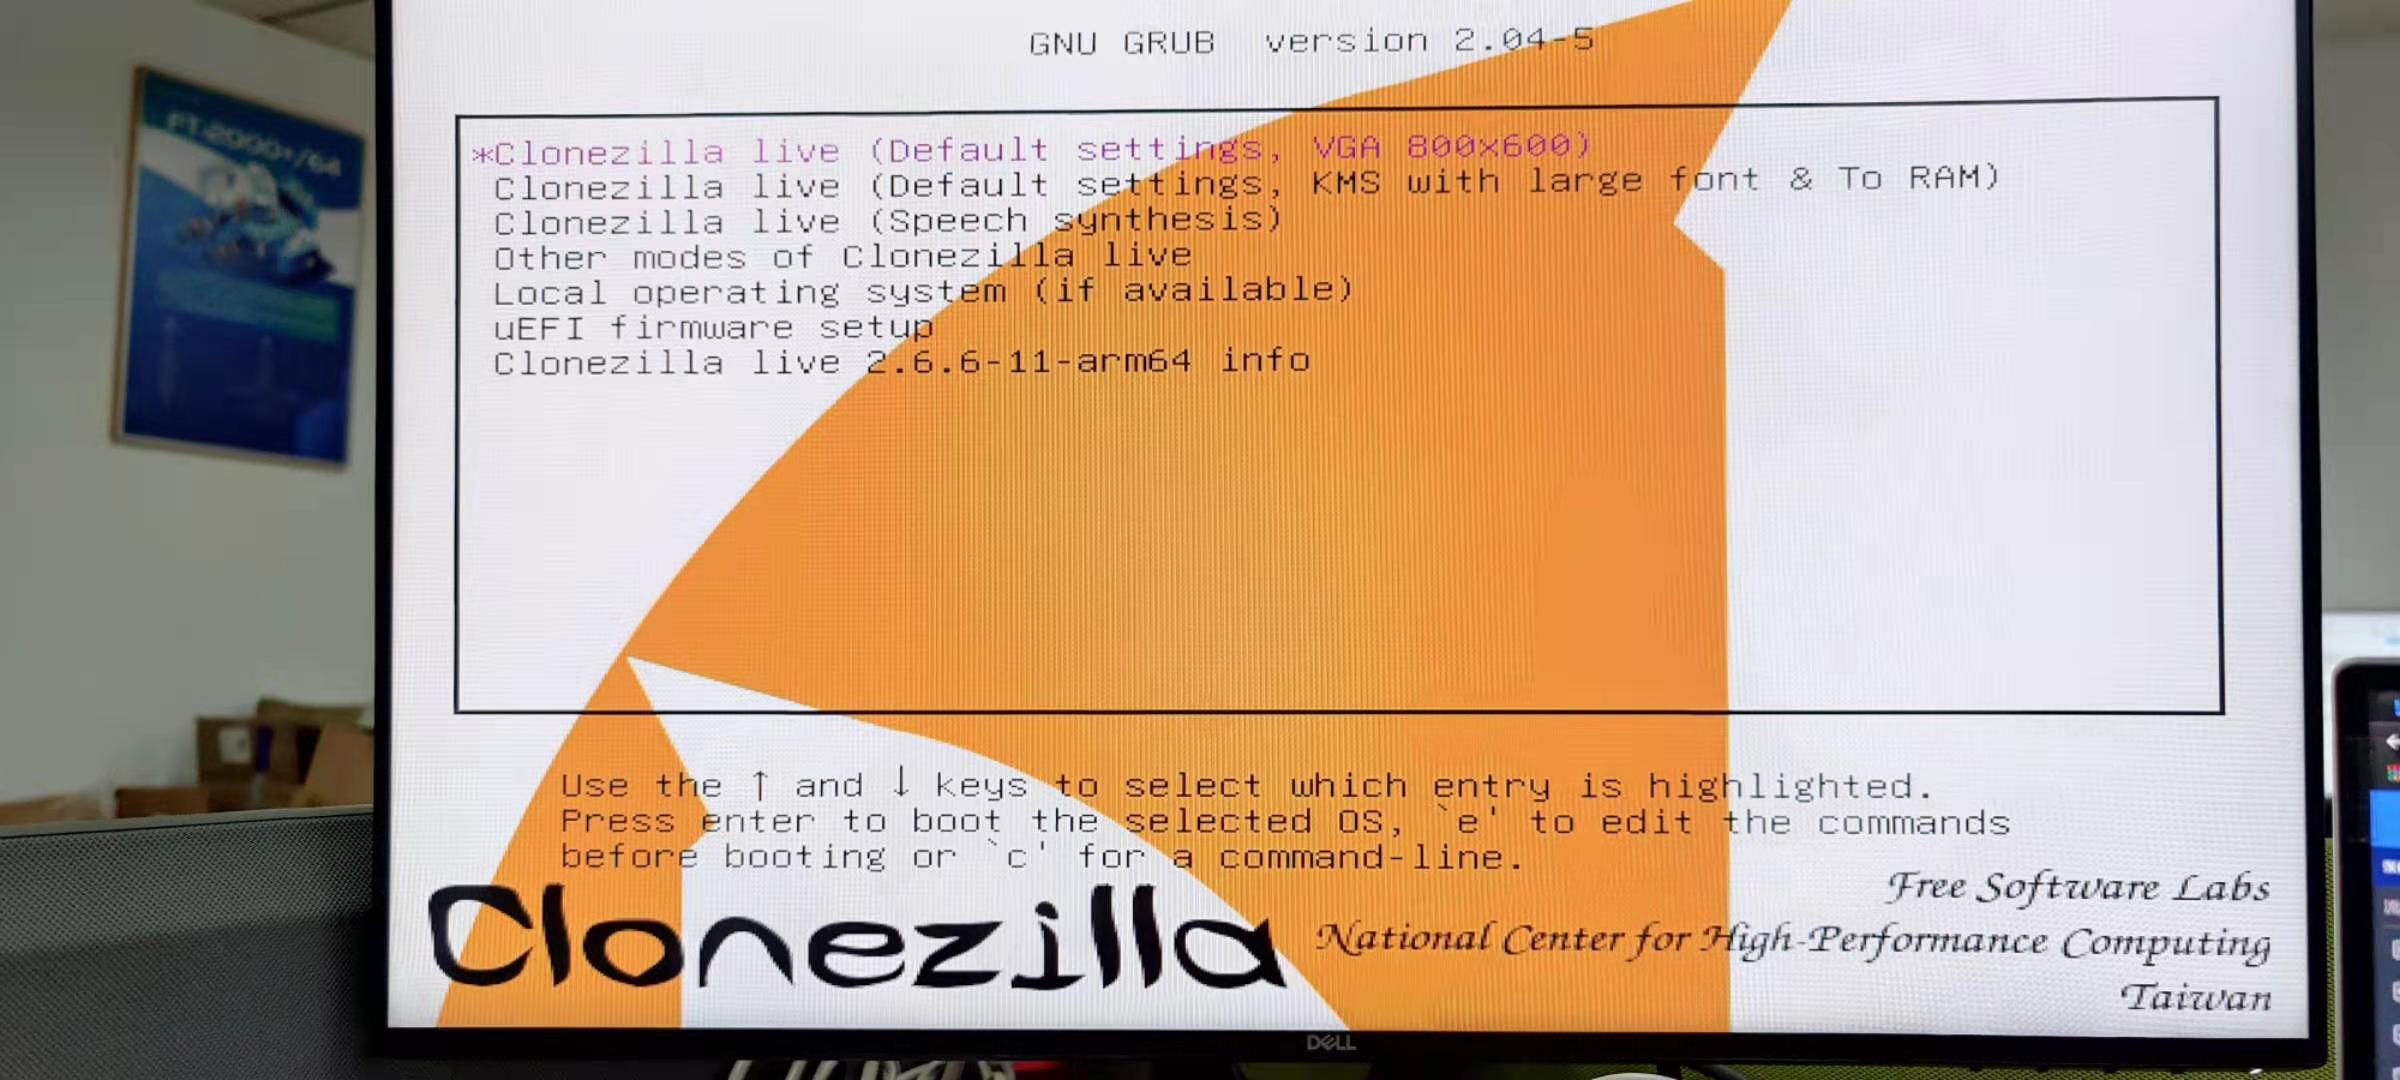 Clonezilla Live 3.1.1-27 instal the new